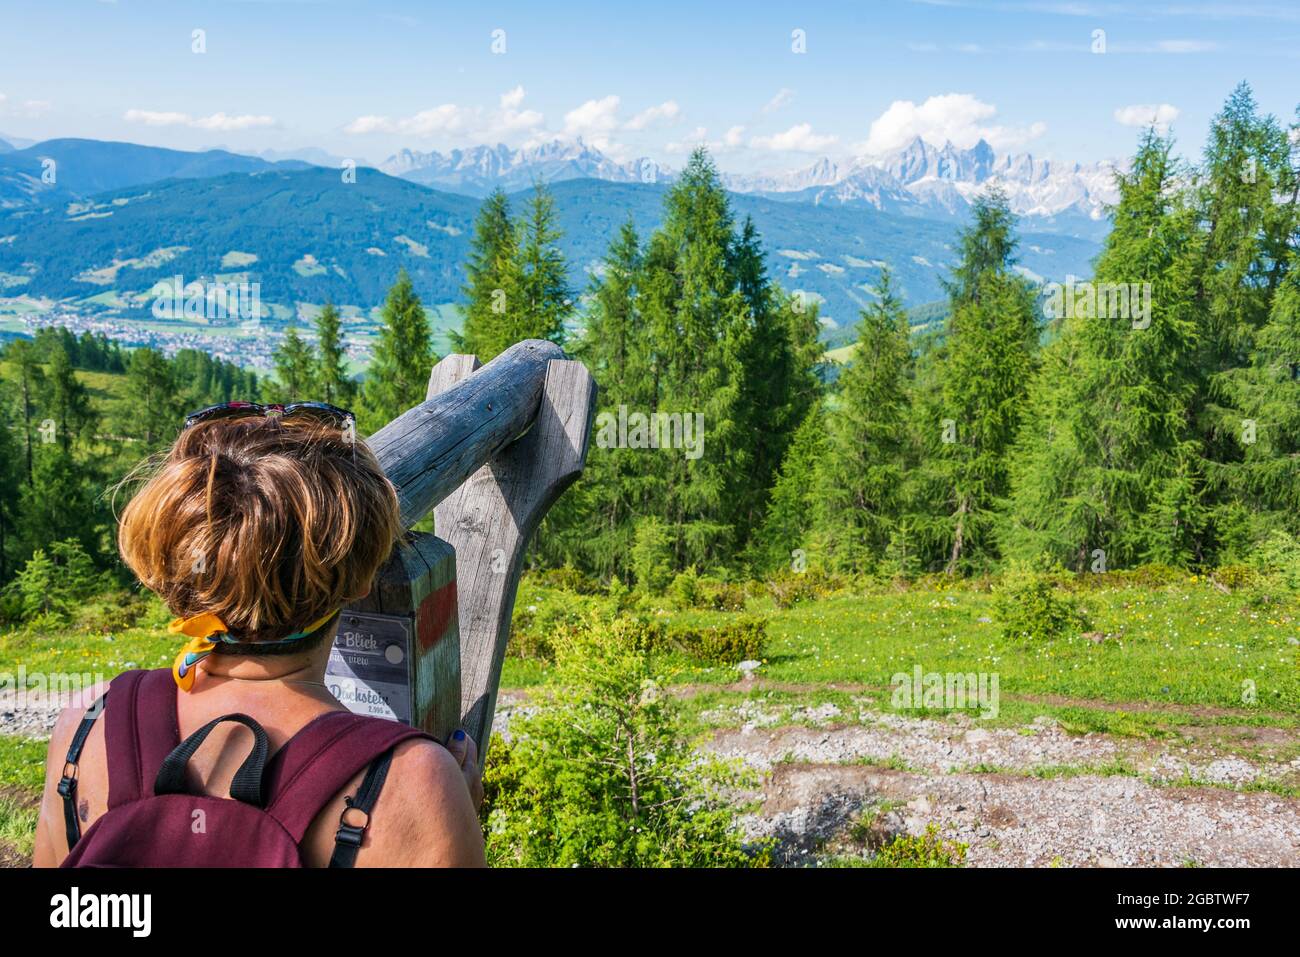 Un touriste sur un sentier de montagne, regardant à travers un télescope en bois le Hoher Dachstein et le massif Dachstein. Sommets de montagnes couverts de nuages. Haut Banque D'Images